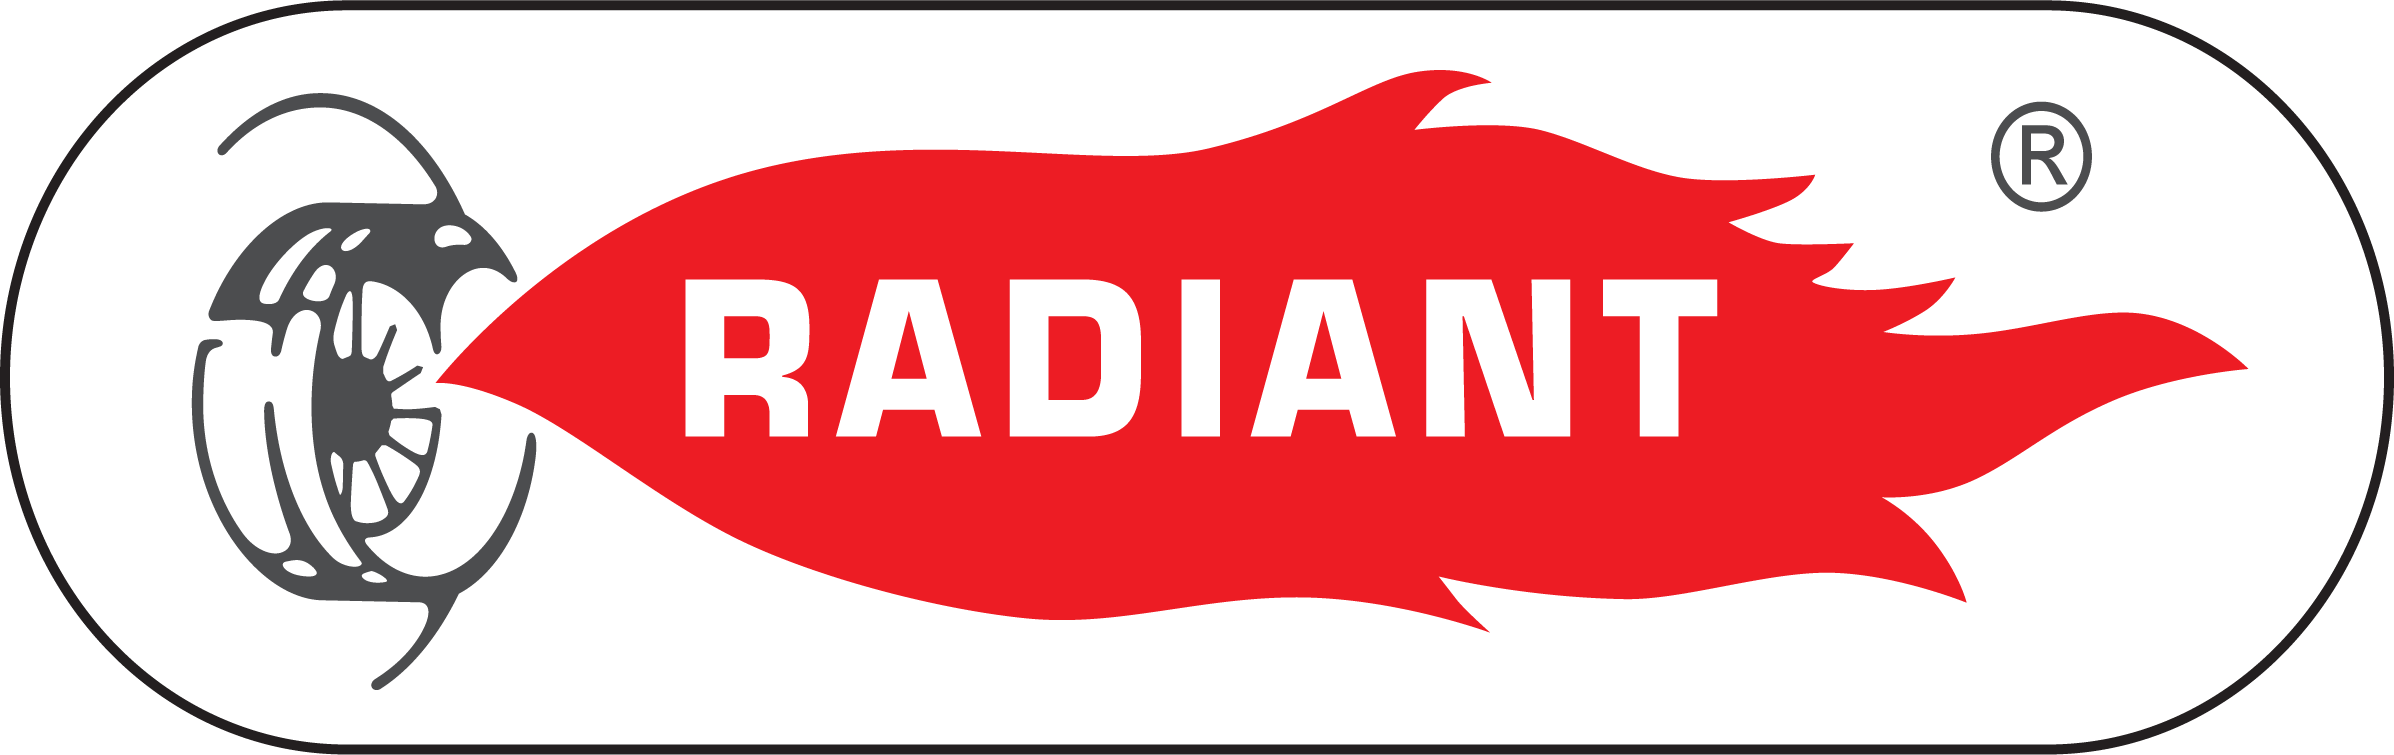 radiant logo png file